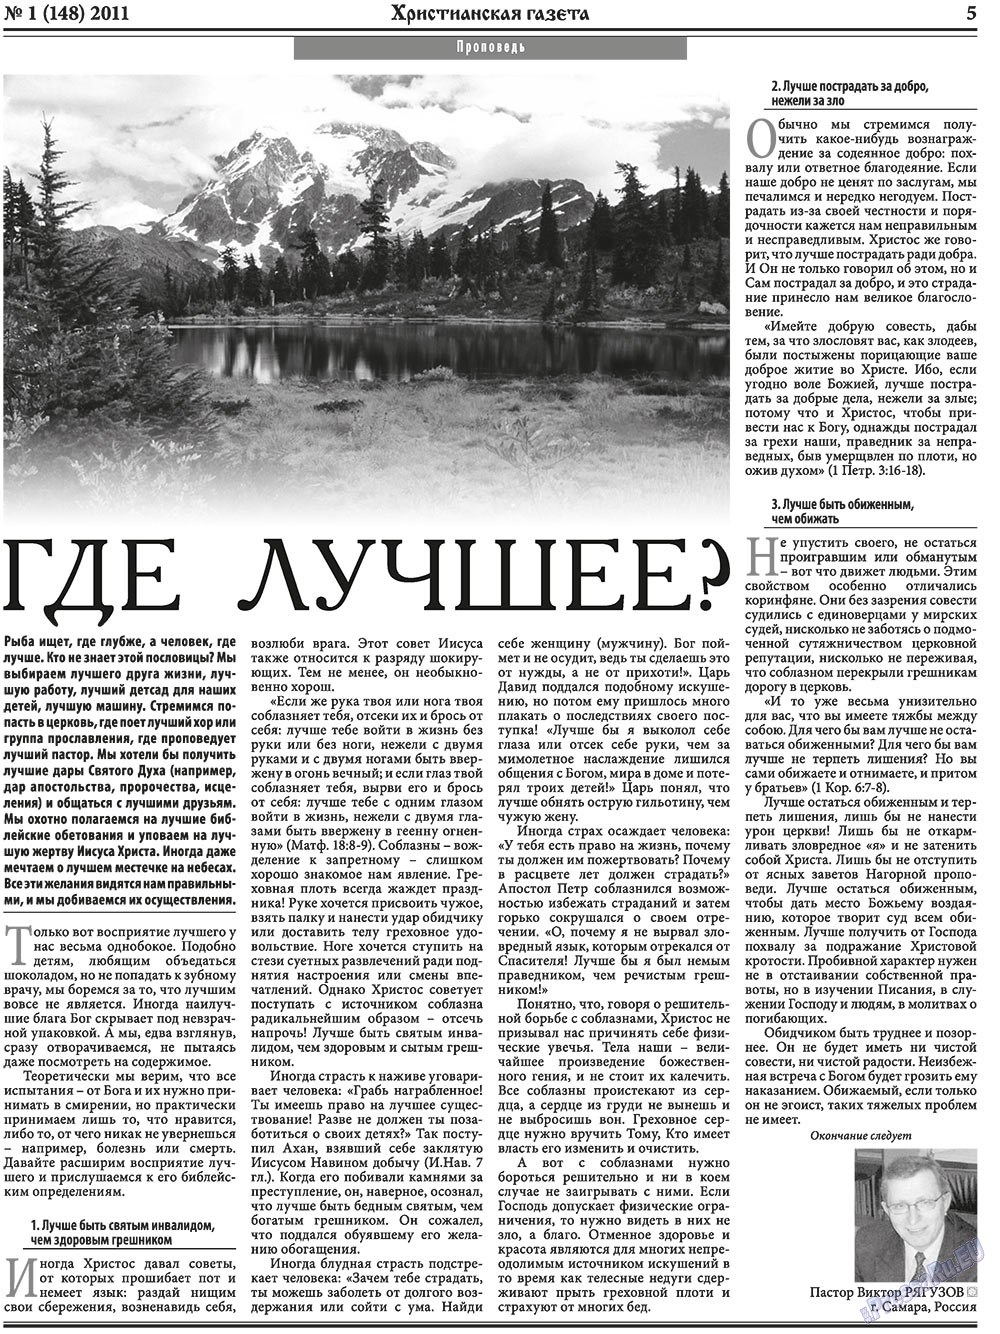 Христианская газета, газета. 2011 №1 стр.5